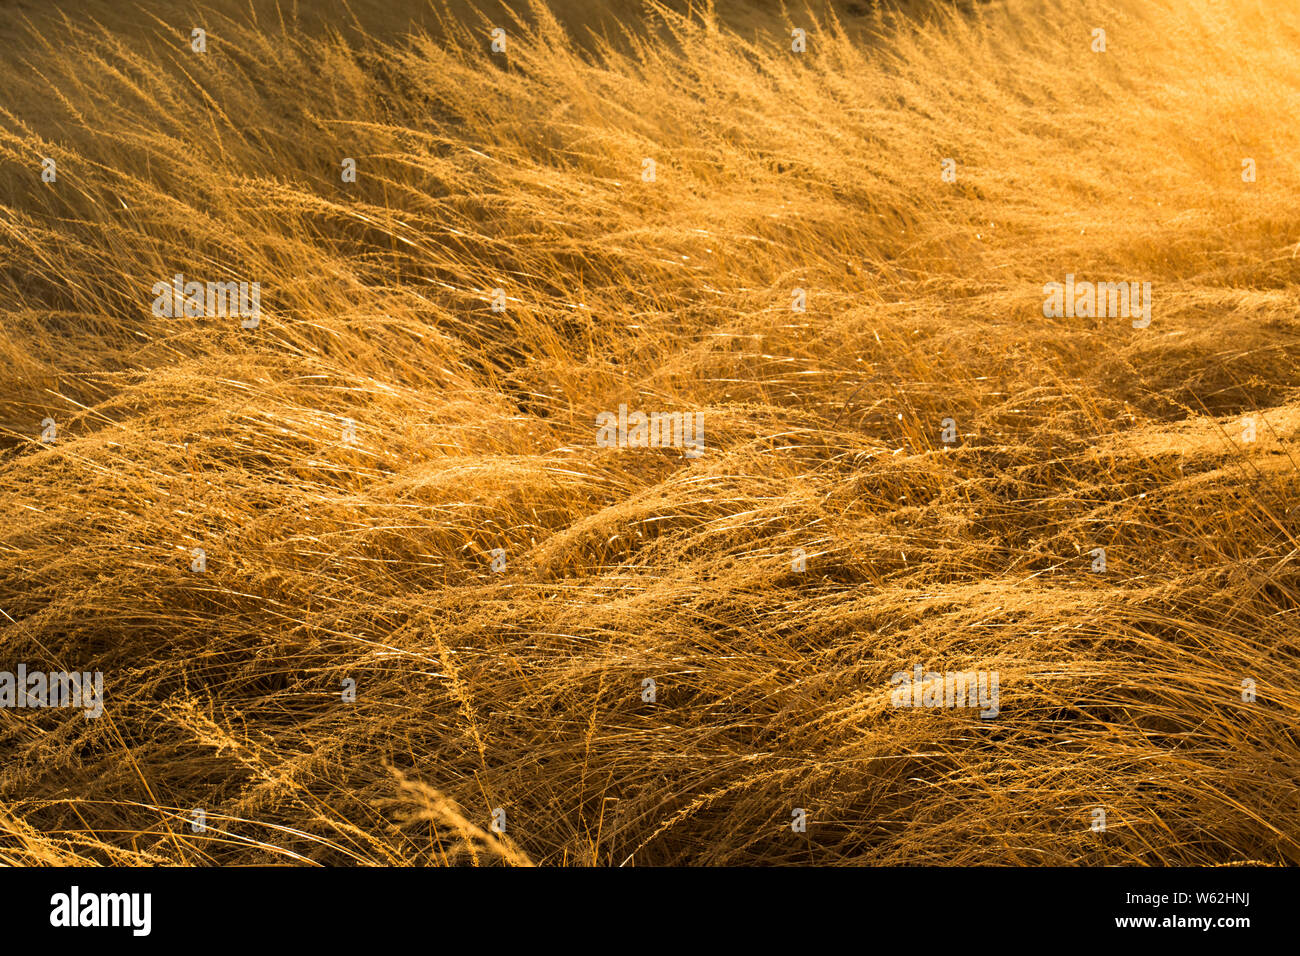 Nahaufnahme von trockenem Gras in weichen, goldenes Sonnenlicht Bild für den Hintergrund verwenden mit Kopie Raum Stockfoto